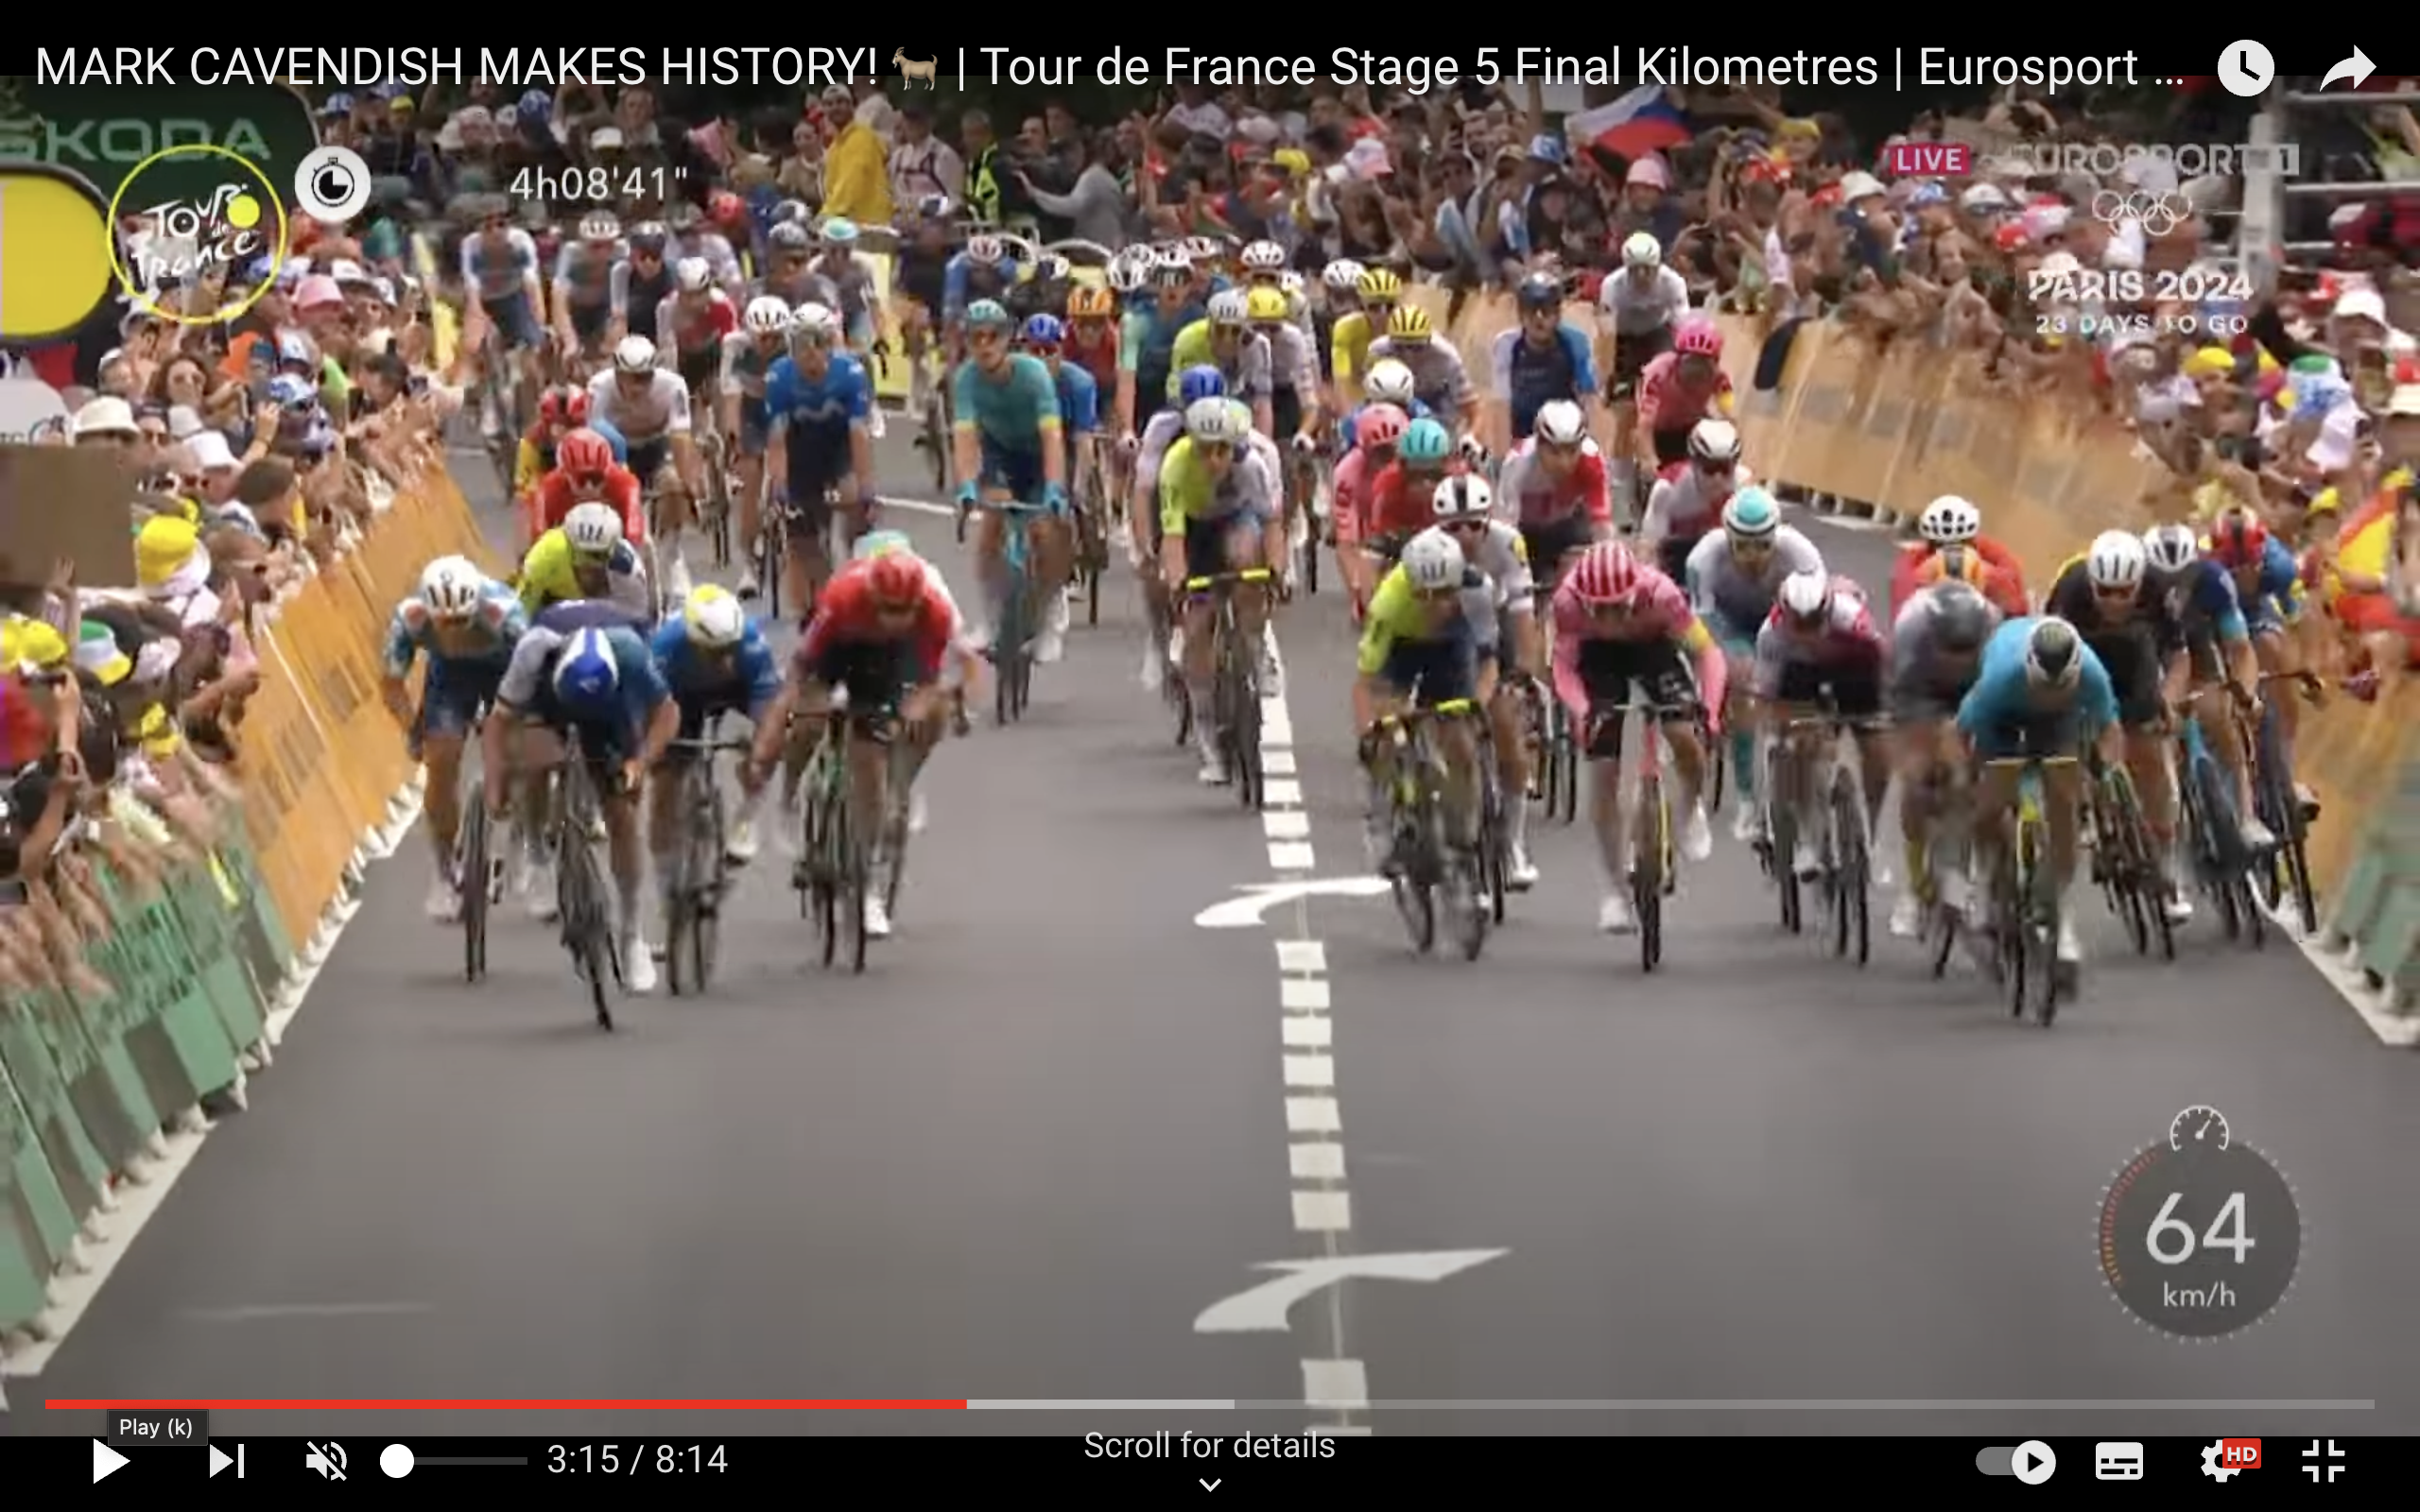 Captures d'écran du dernier kilomètre de l'étape 5 lorsque Mark Cavendish a remporté sa 35e victoire d'étape du Tour de France, un record